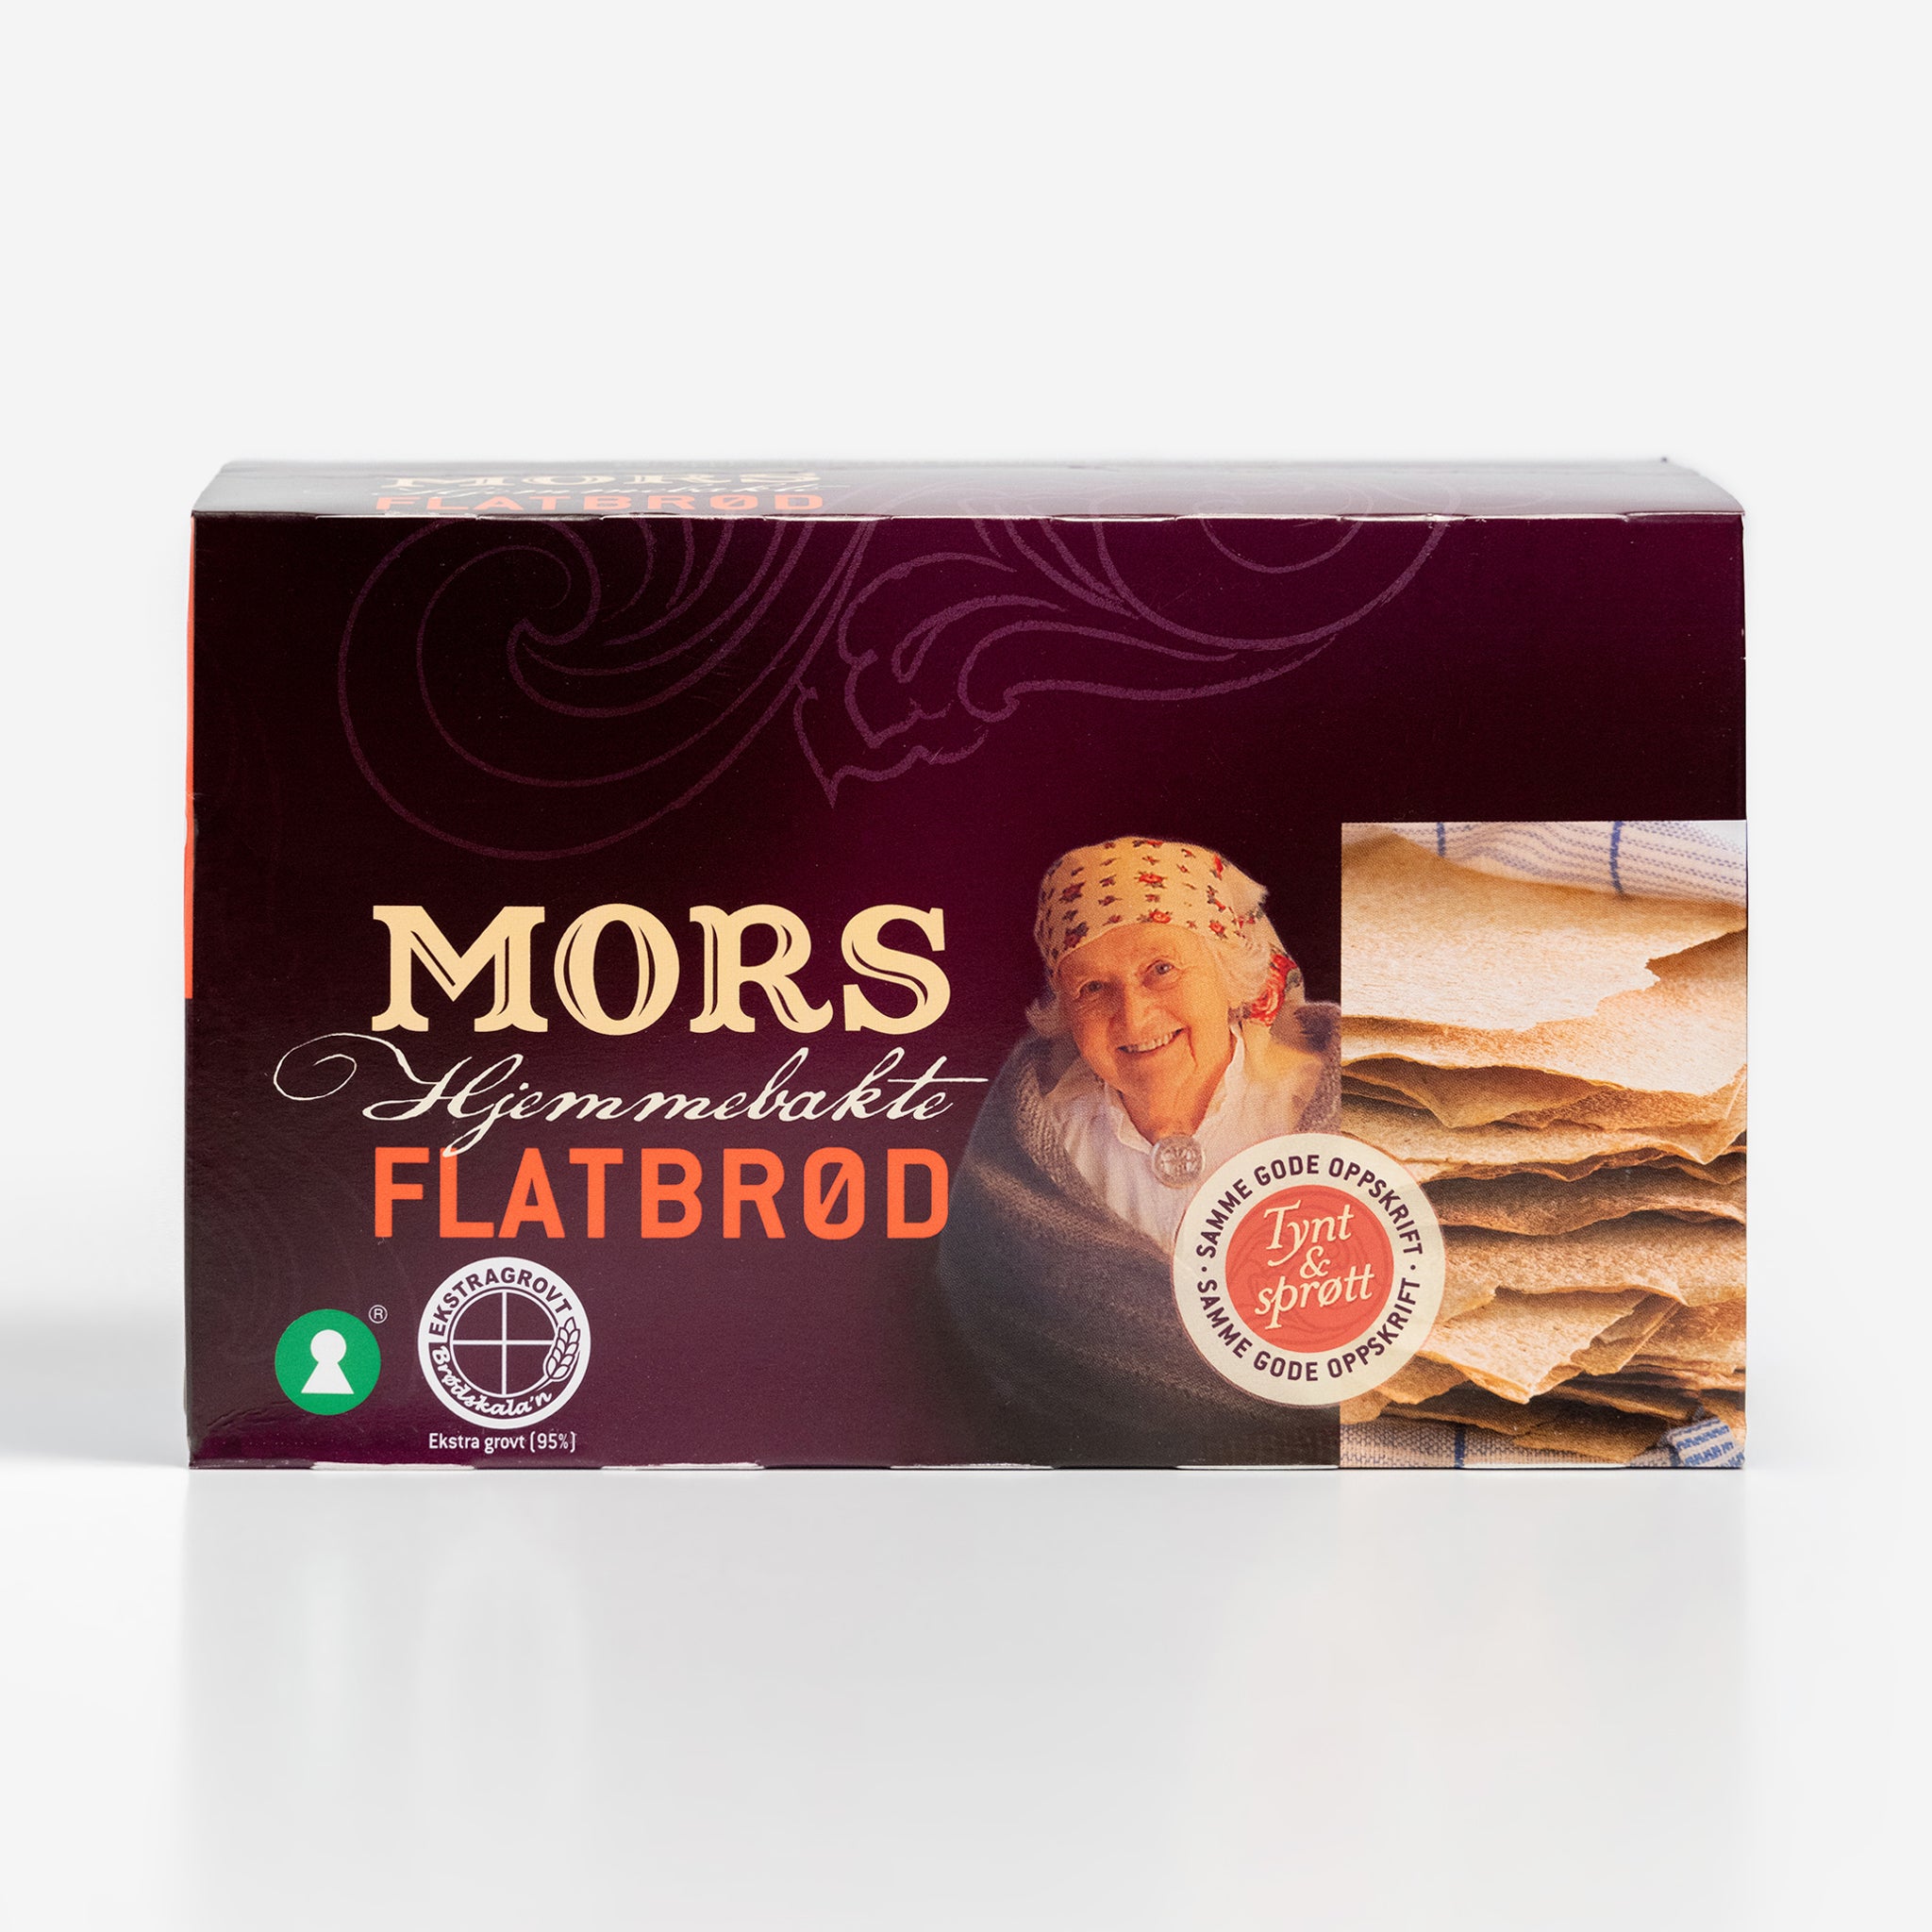 Mors Flatbrød - Flatbread